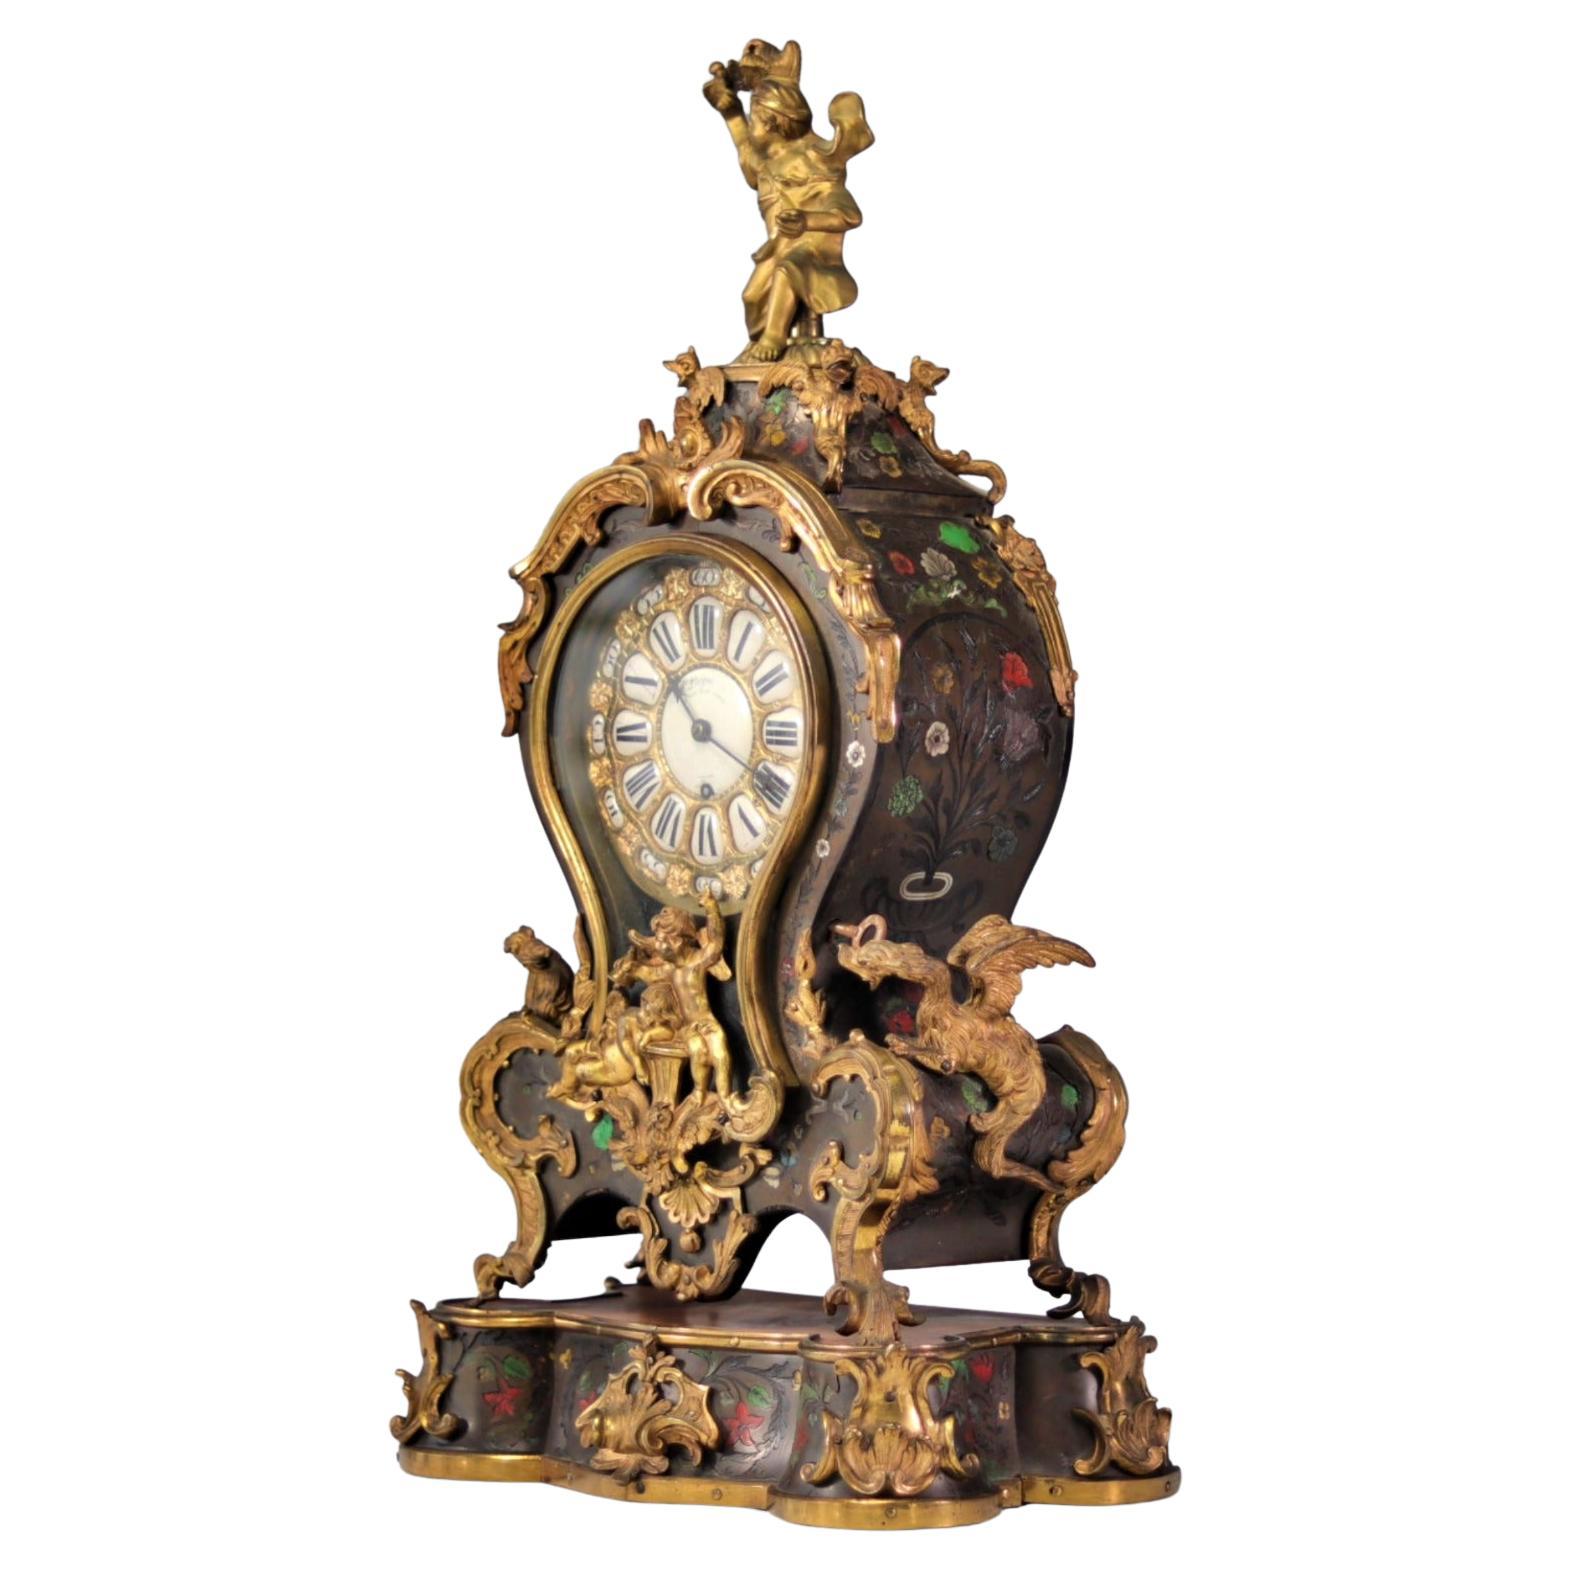 Seltene englische Uhr aus dem 18. Jahrhundert